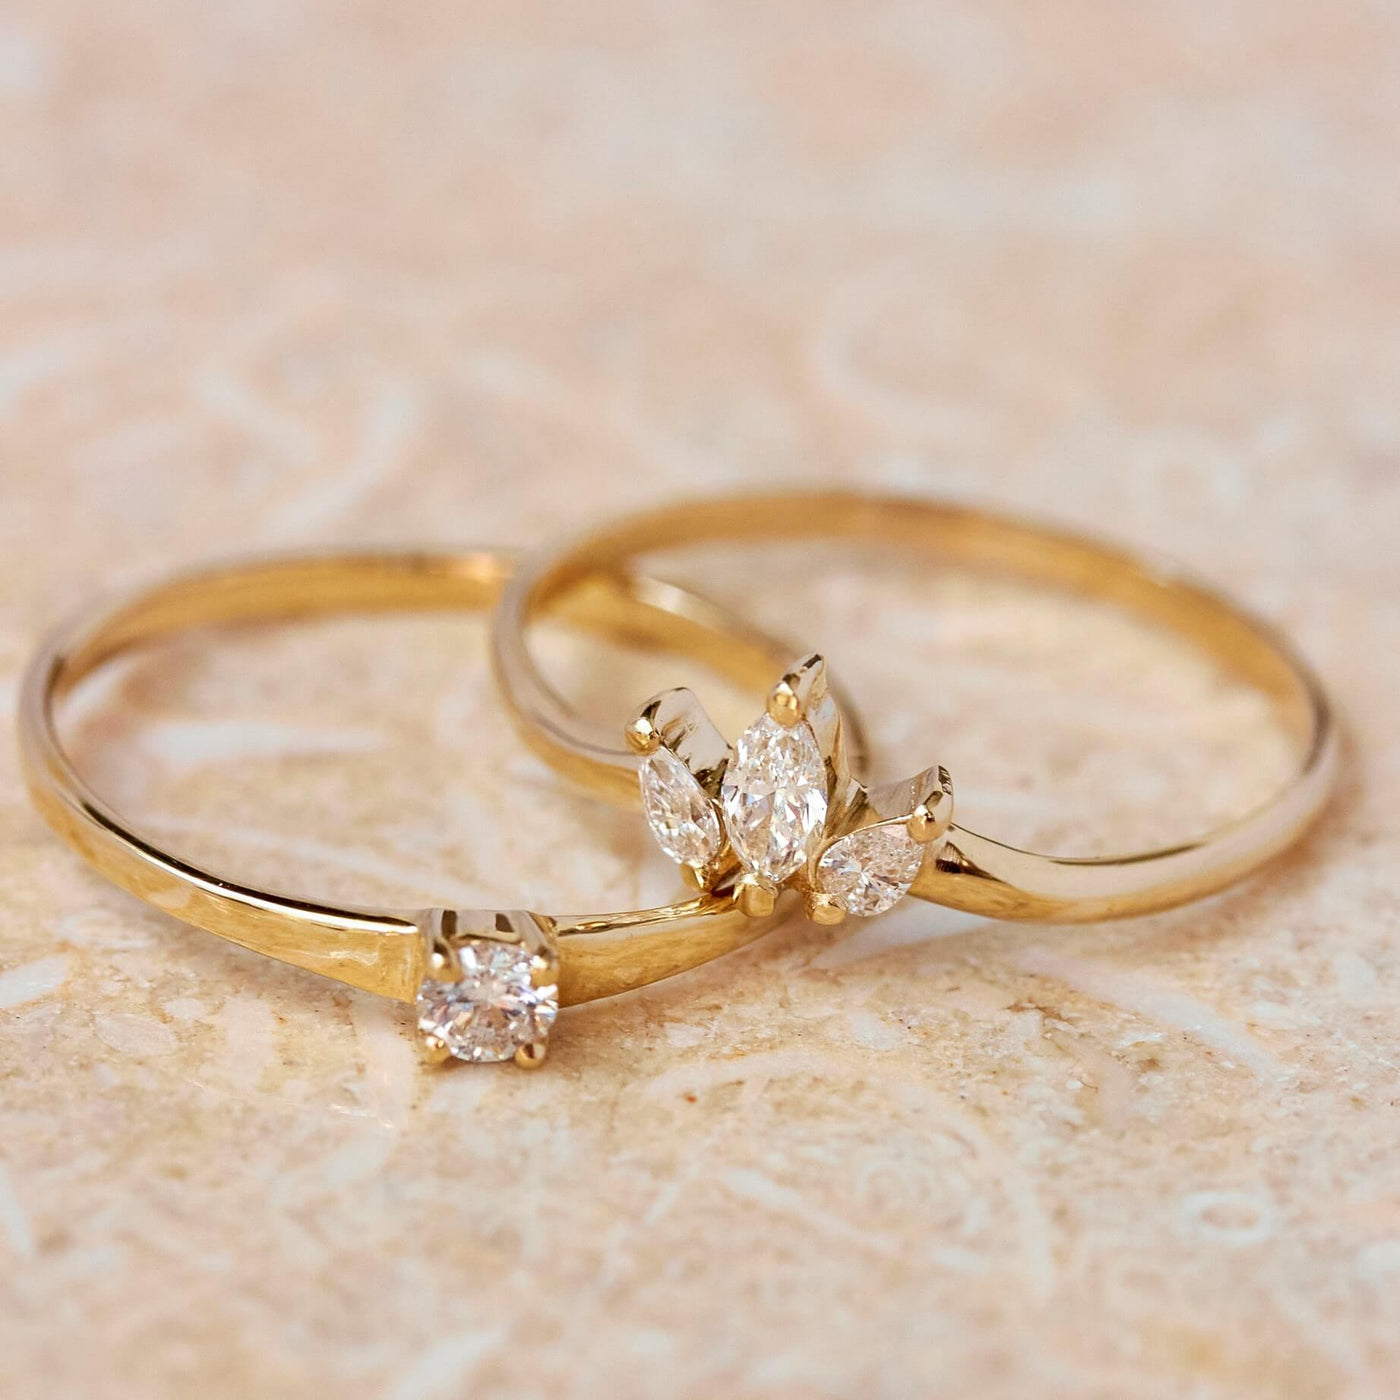 Lulu Rings Set 14K Gold White Diamonds Rings 